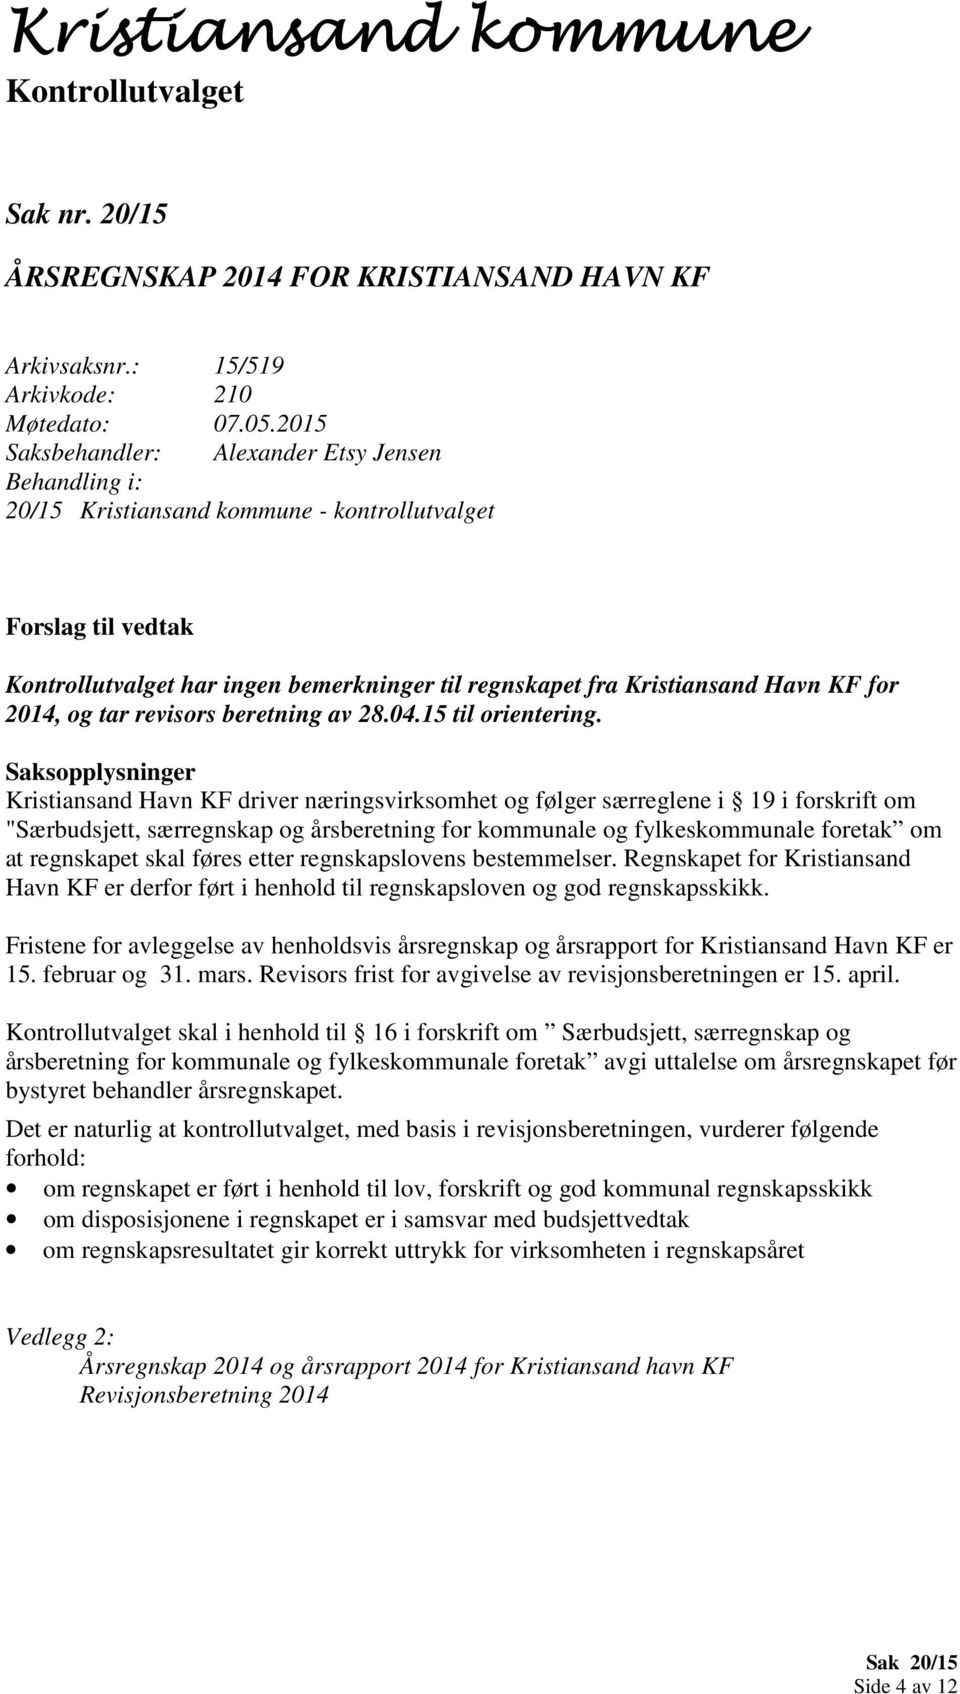 Kristiansand Havn KF driver næringsvirksomhet og følger særreglene i 19 i forskrift om "Særbudsjett, særregnskap og årsberetning for kommunale og fylkeskommunale foretak om at regnskapet skal føres